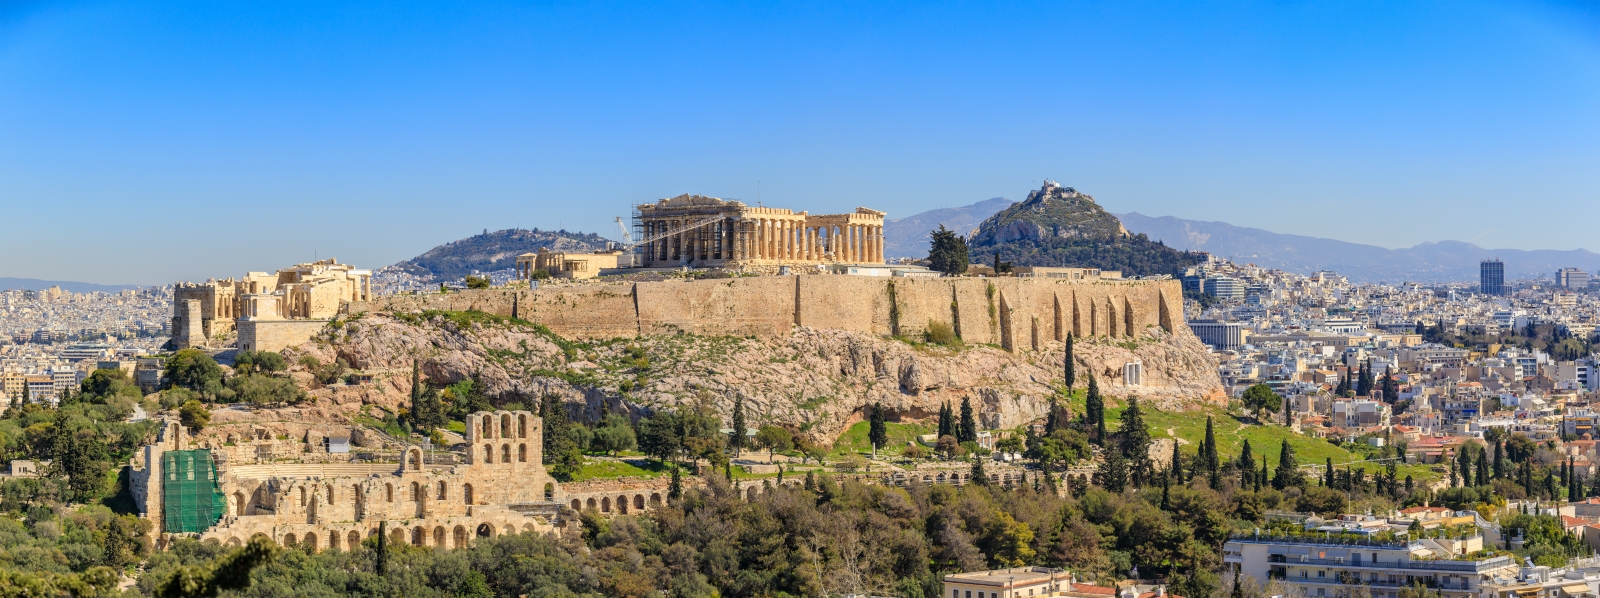 Ve al paisaje de la ciudad de Atenas con la Acrópolis